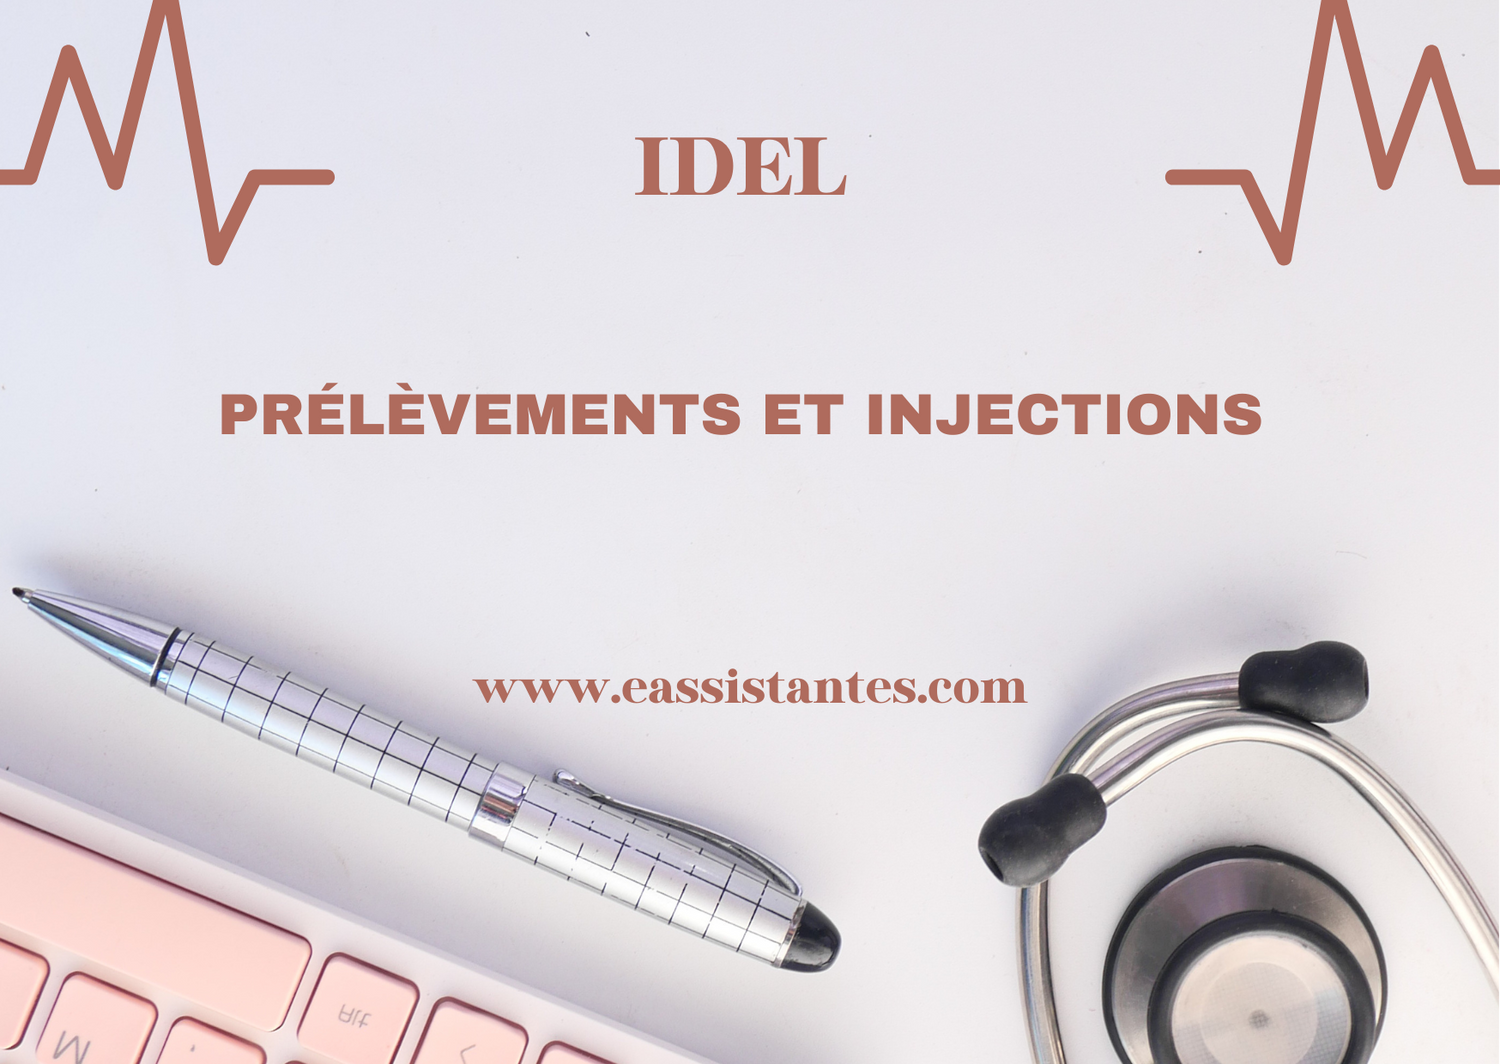 Les cotations pour les prélèvements et injections pour IDEL